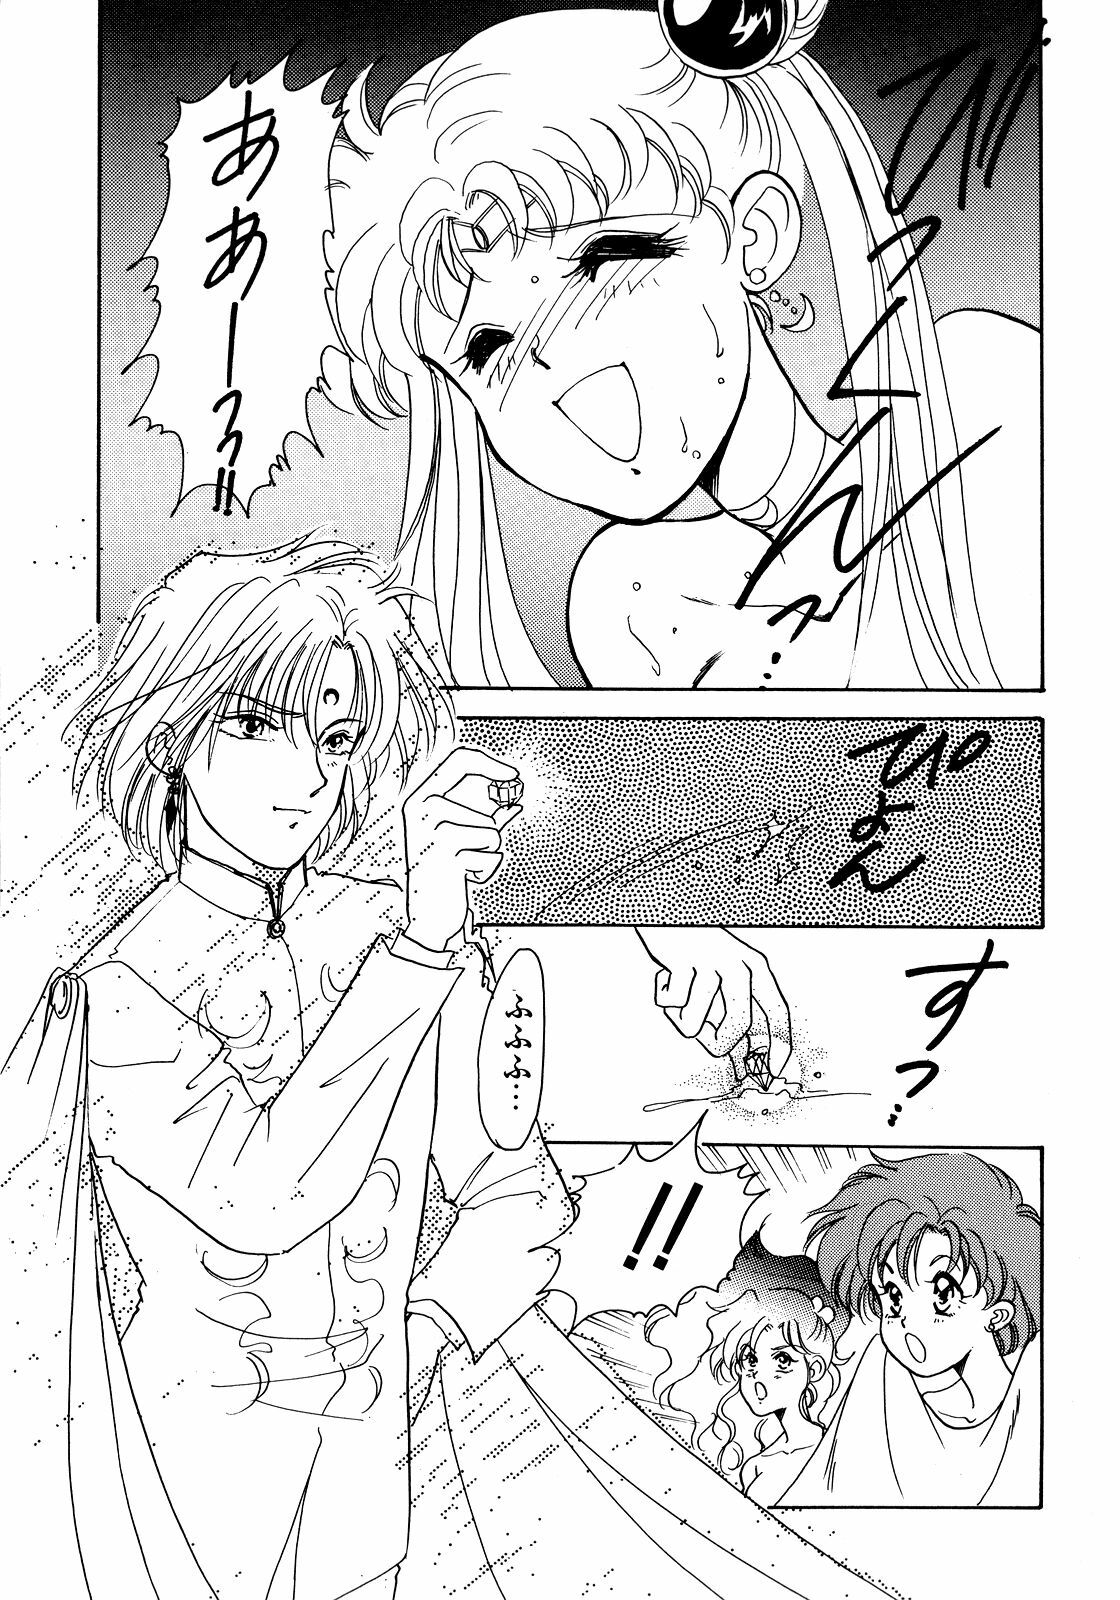 [Anthology] Lunatic Party 5 (Bishoujo Senshi Sailor Moon) page 34 full